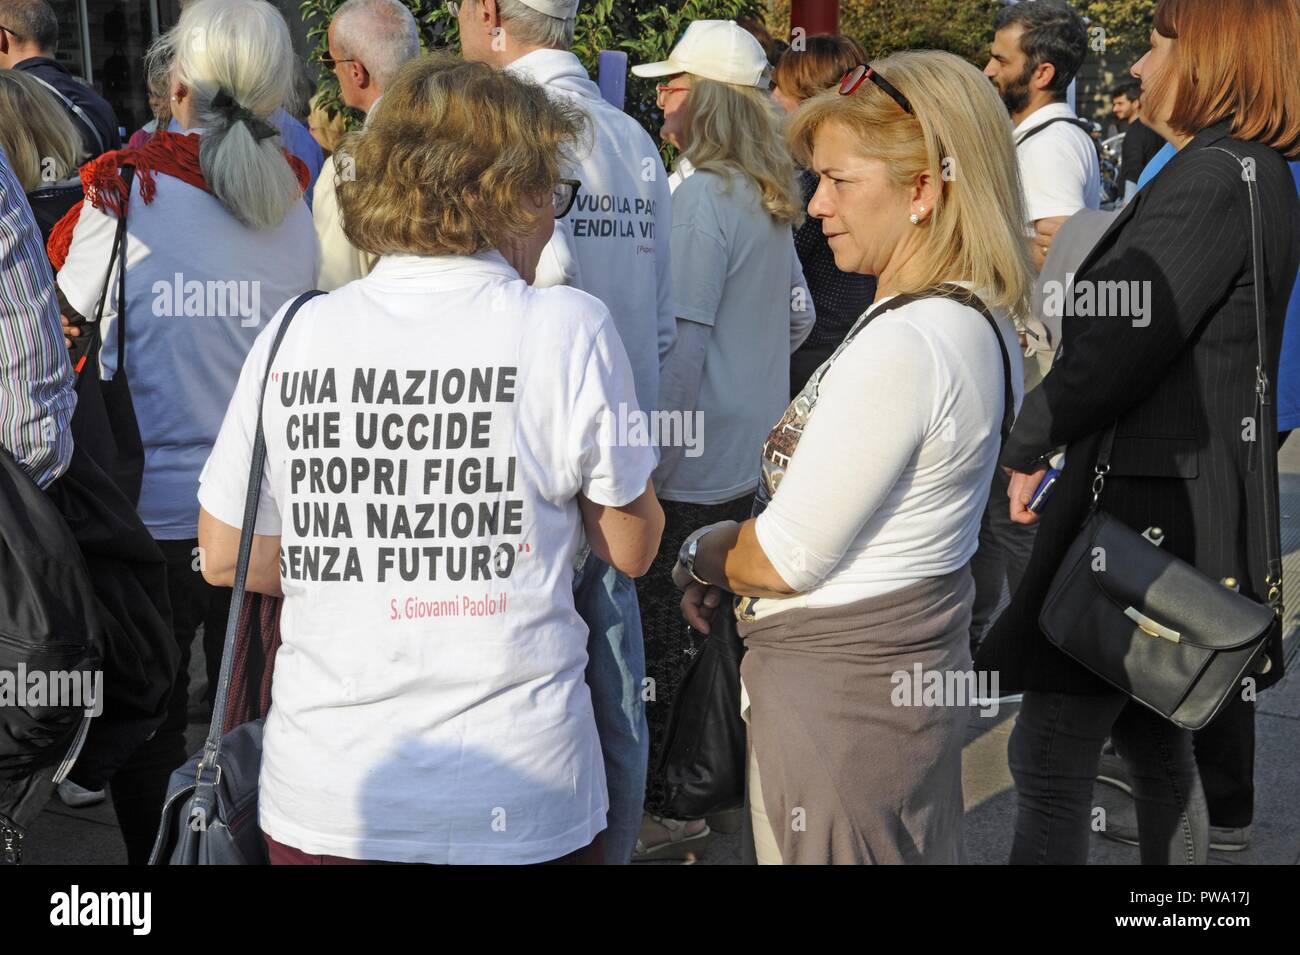 Milano (Italia), la dimostrazione dei cattolici estremisti e partito neofascista Forza Nuova contro la legge 194 sull'aborto. Foto Stock